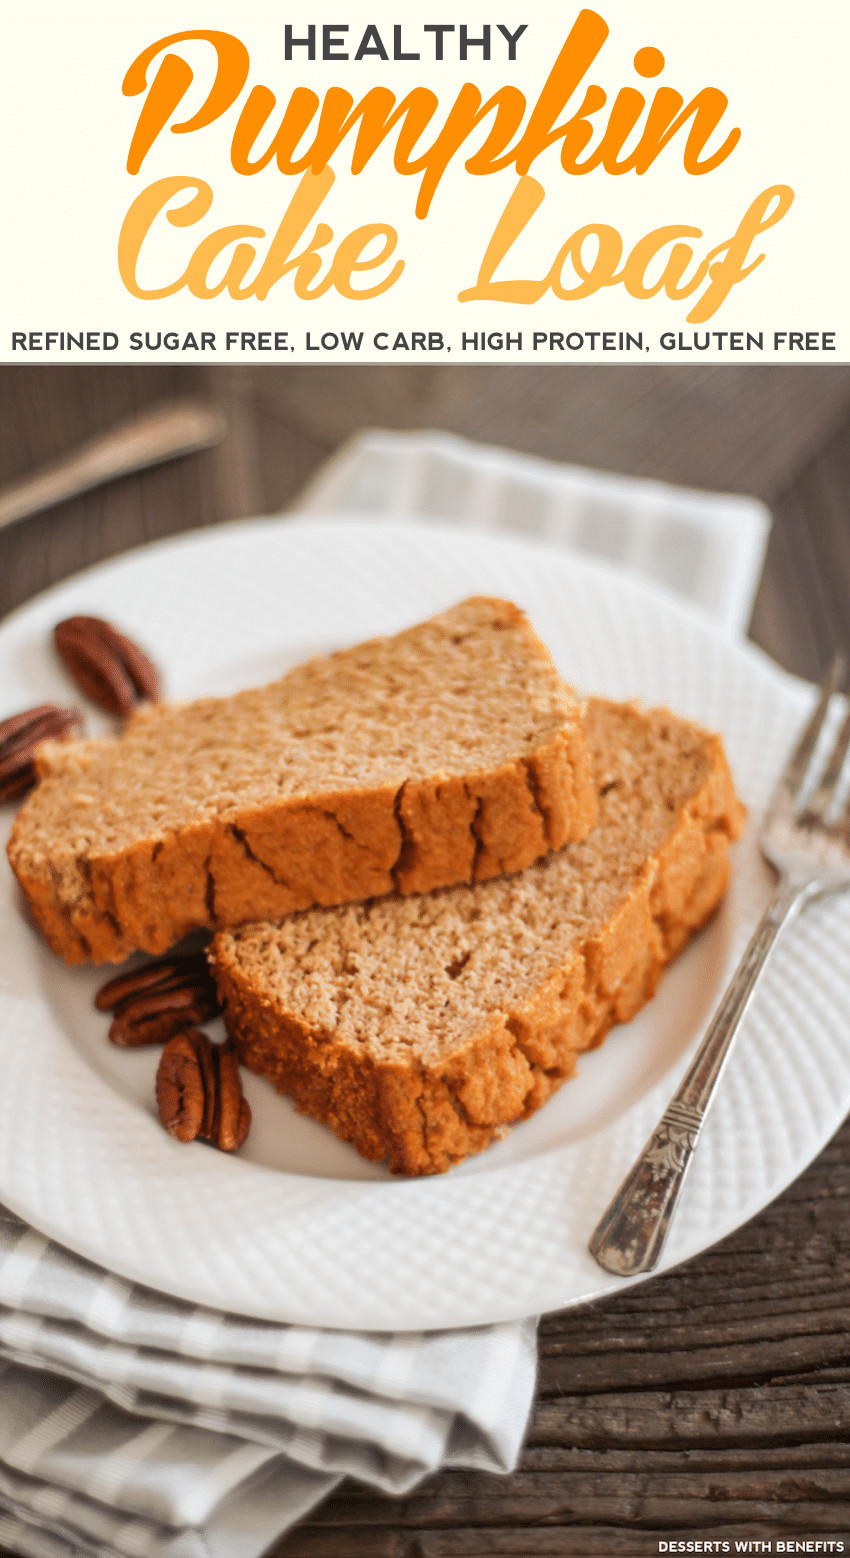 Sugar Free Gluten Free Dessert
 Desserts With Benefits Healthy Pumpkin Cake Loaf recipe